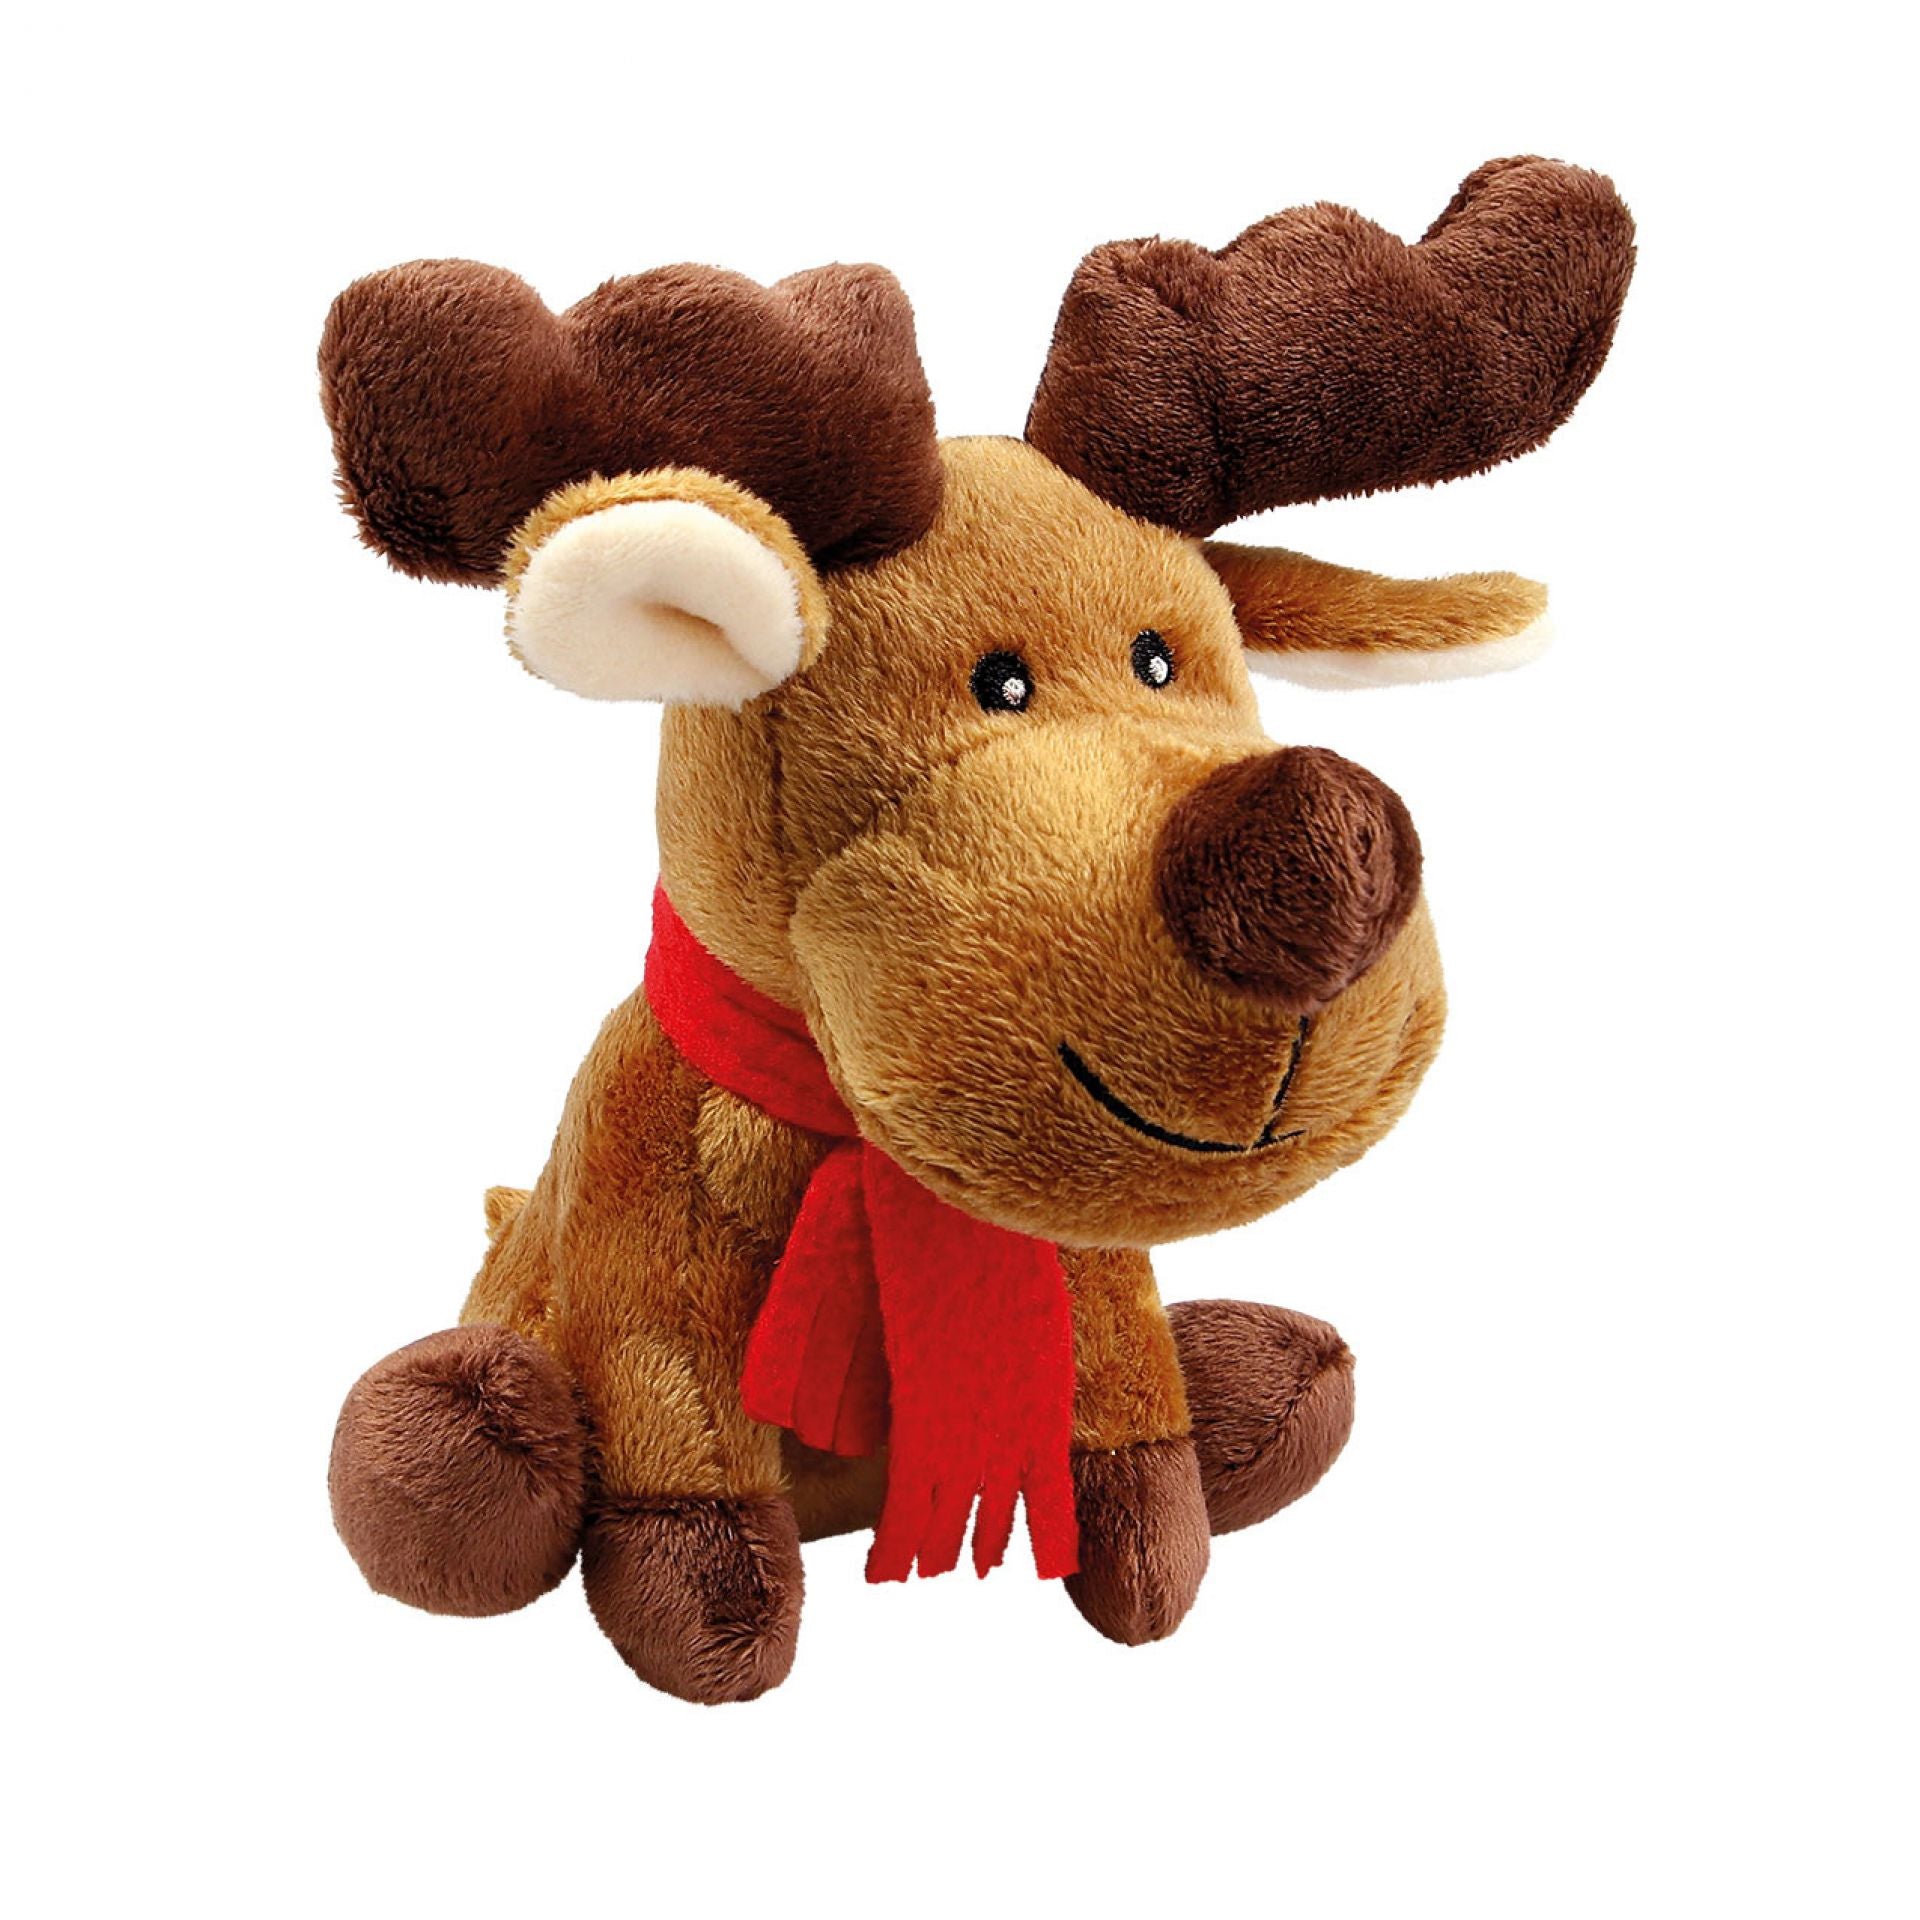 Wolters - Plüschelch "Rudolph" in 20cm